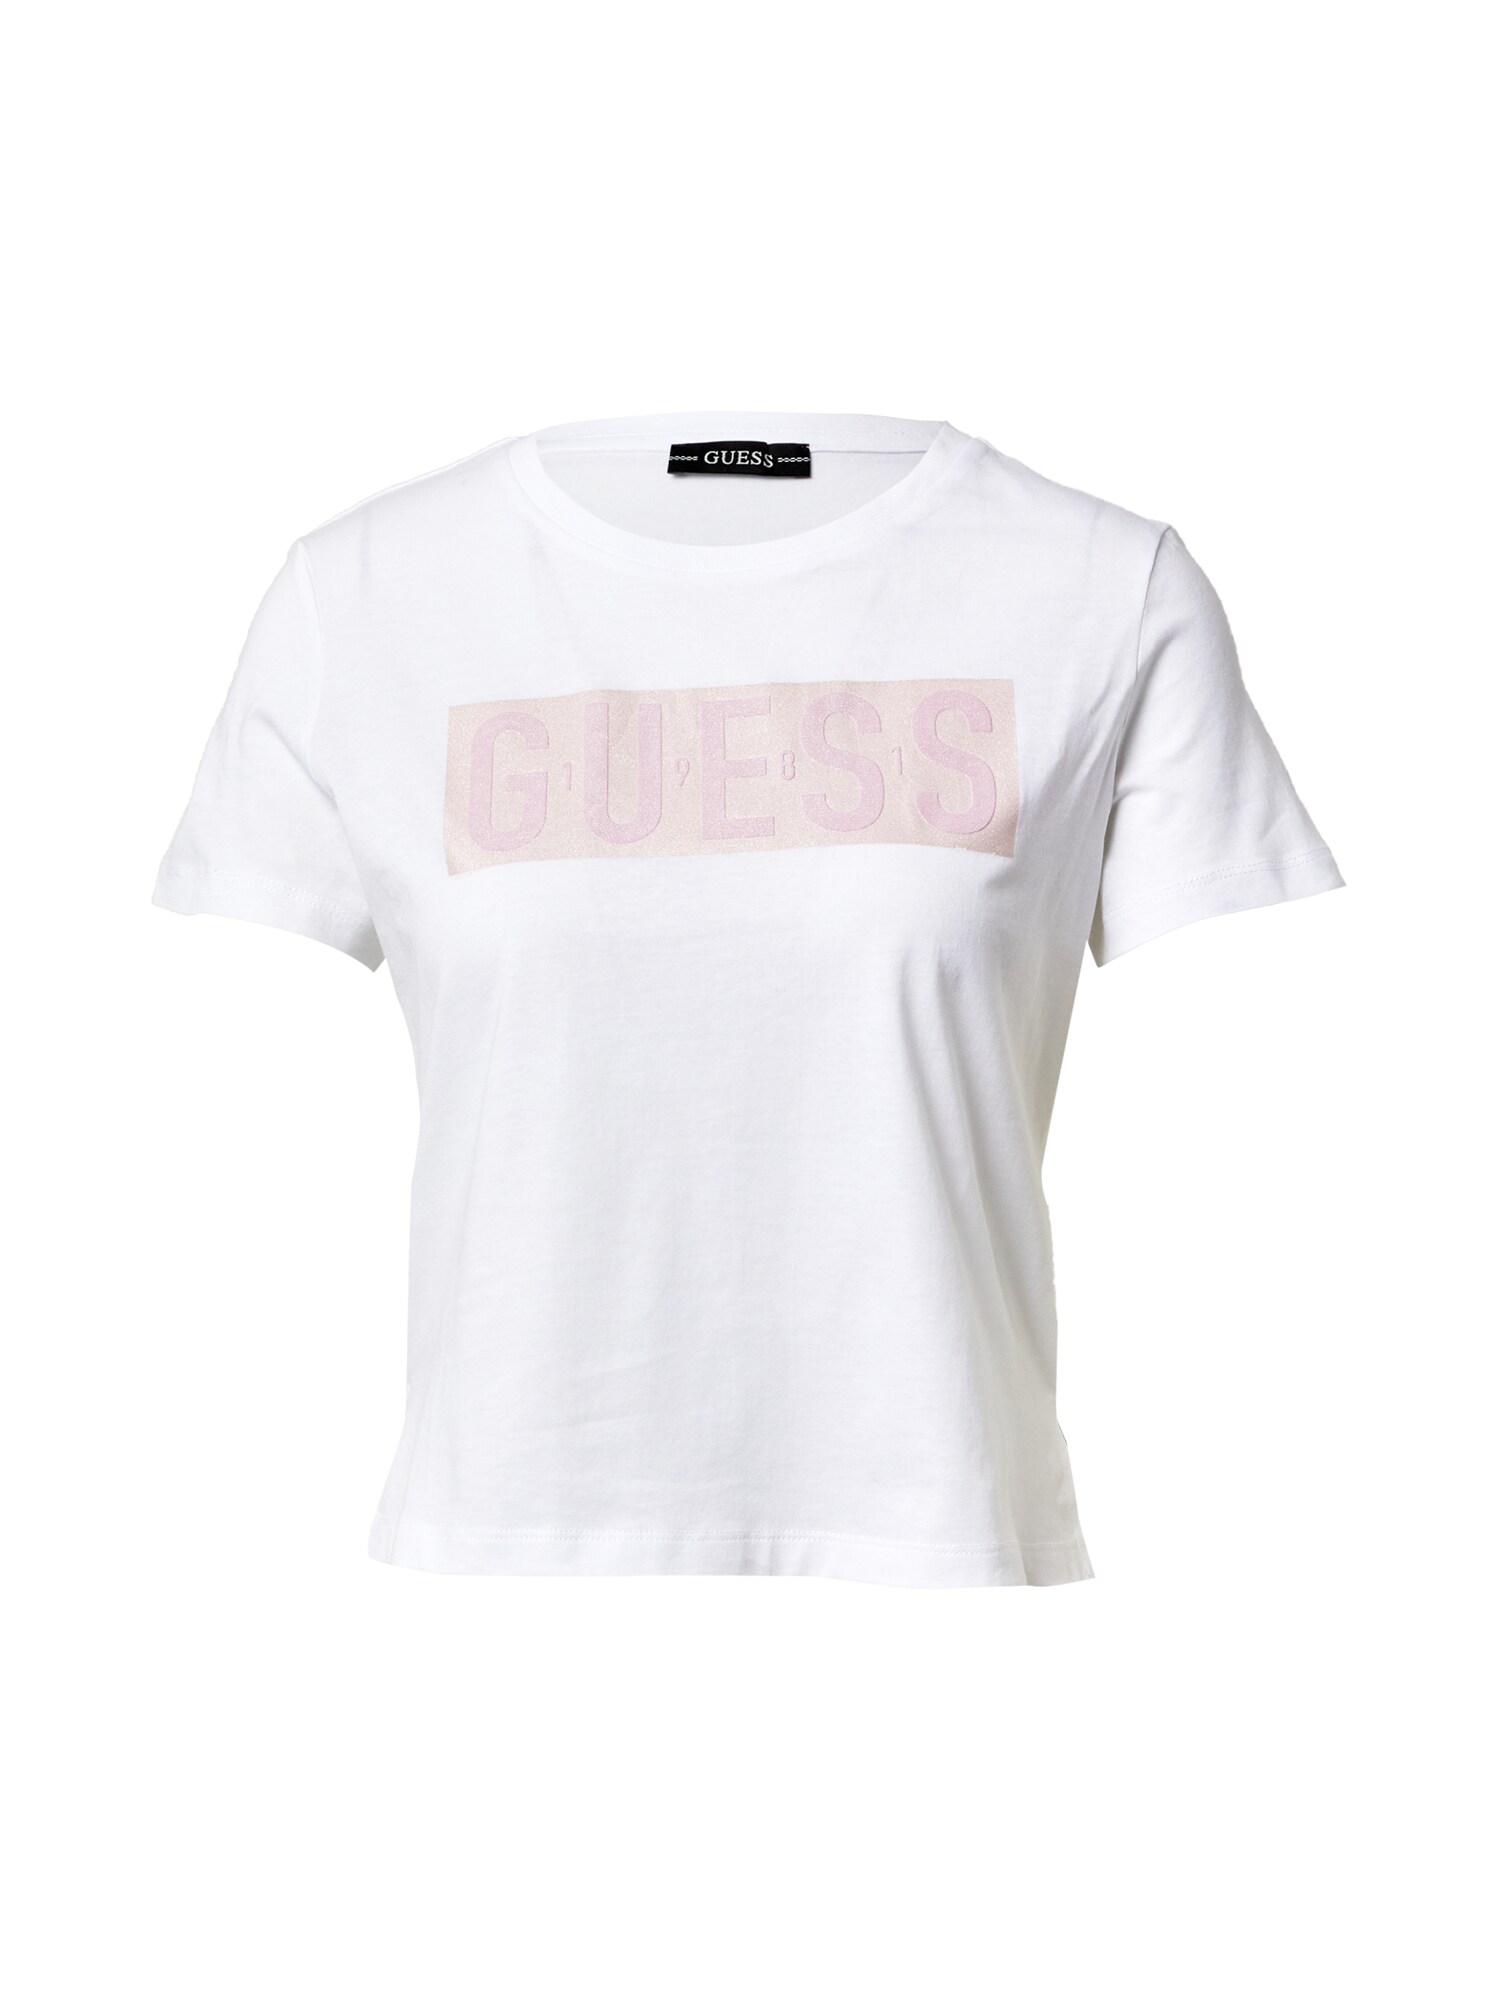 GUESS Marškinėliai 'ADRIA'  balta / kūno spalva / ryškiai rožinė spalva